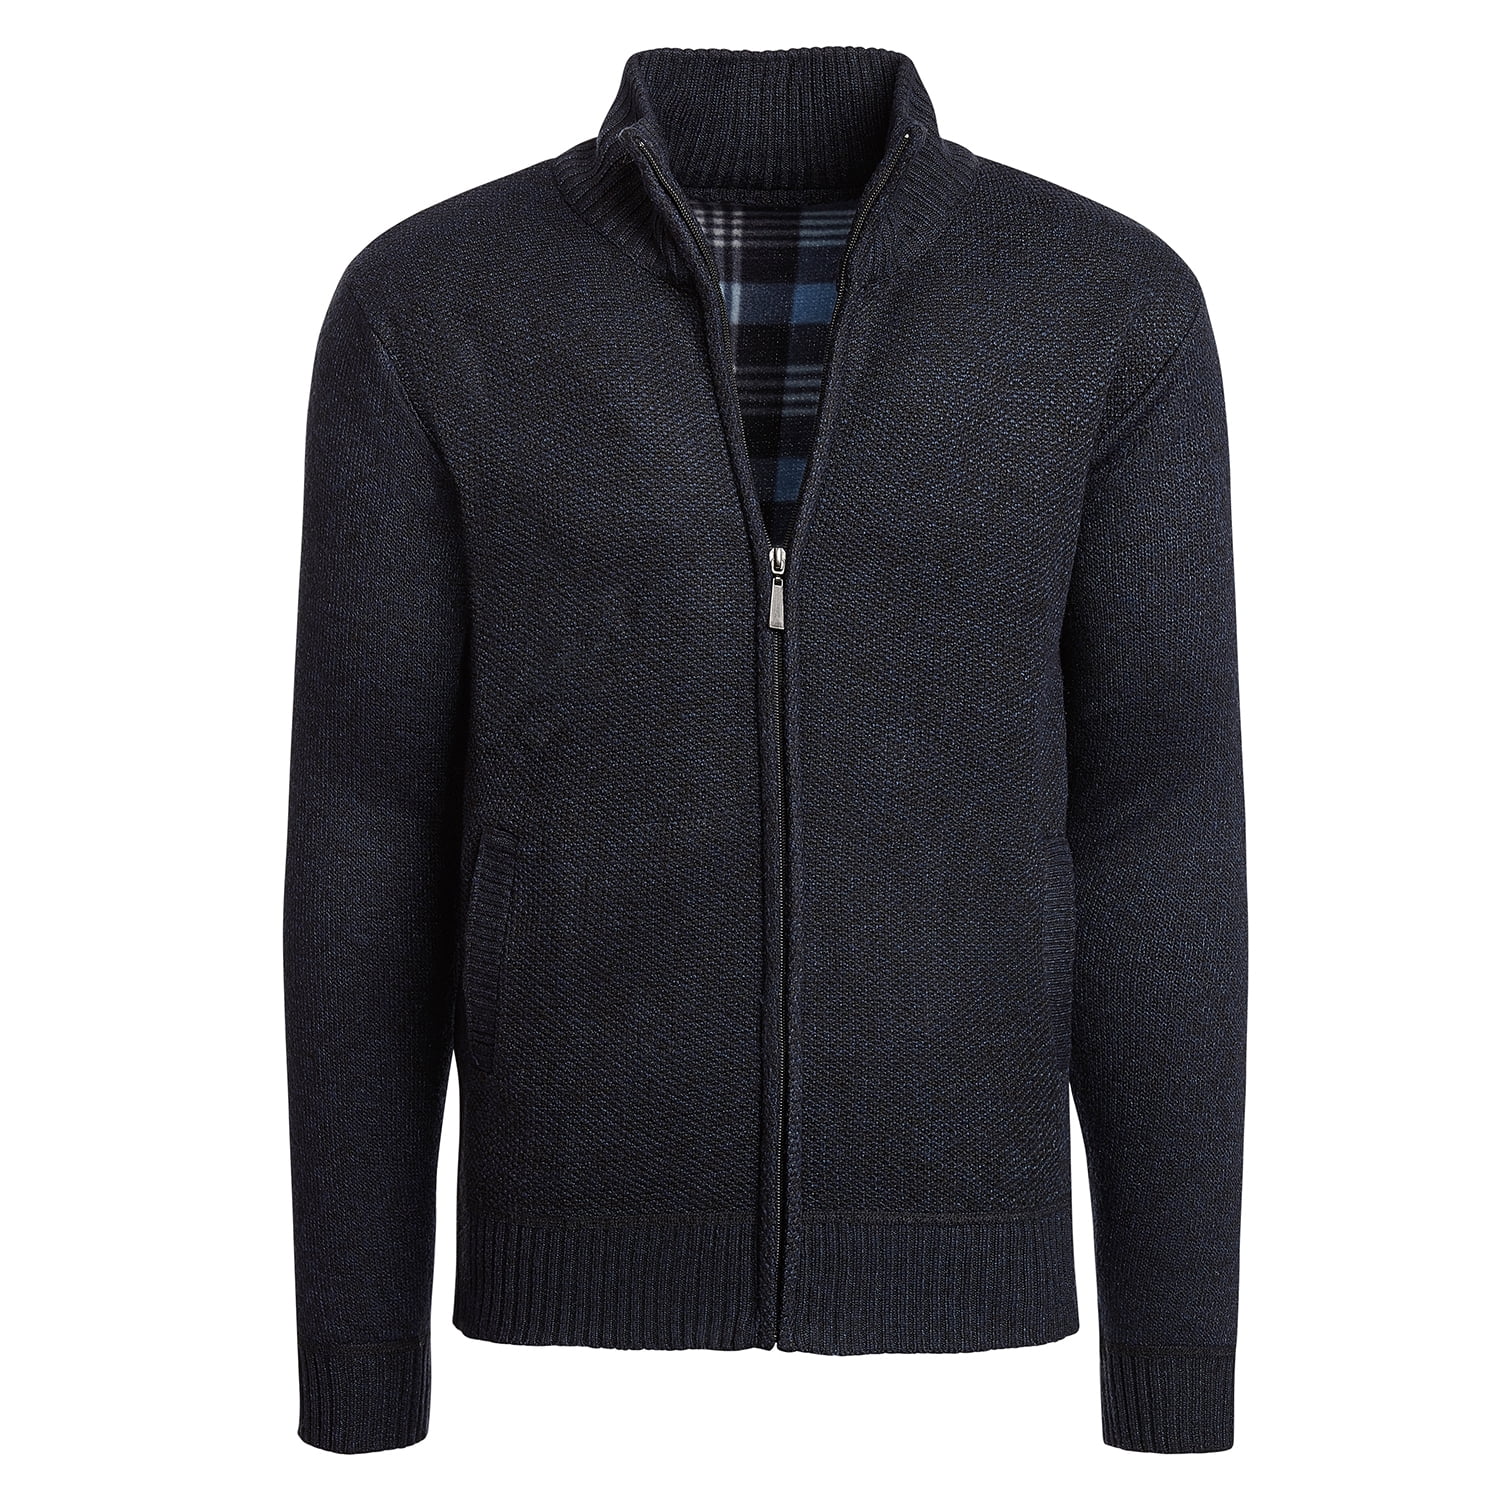 Altatac - Alta Men's Casual Fleece Lined Full-Zip Sweater Jacket ...